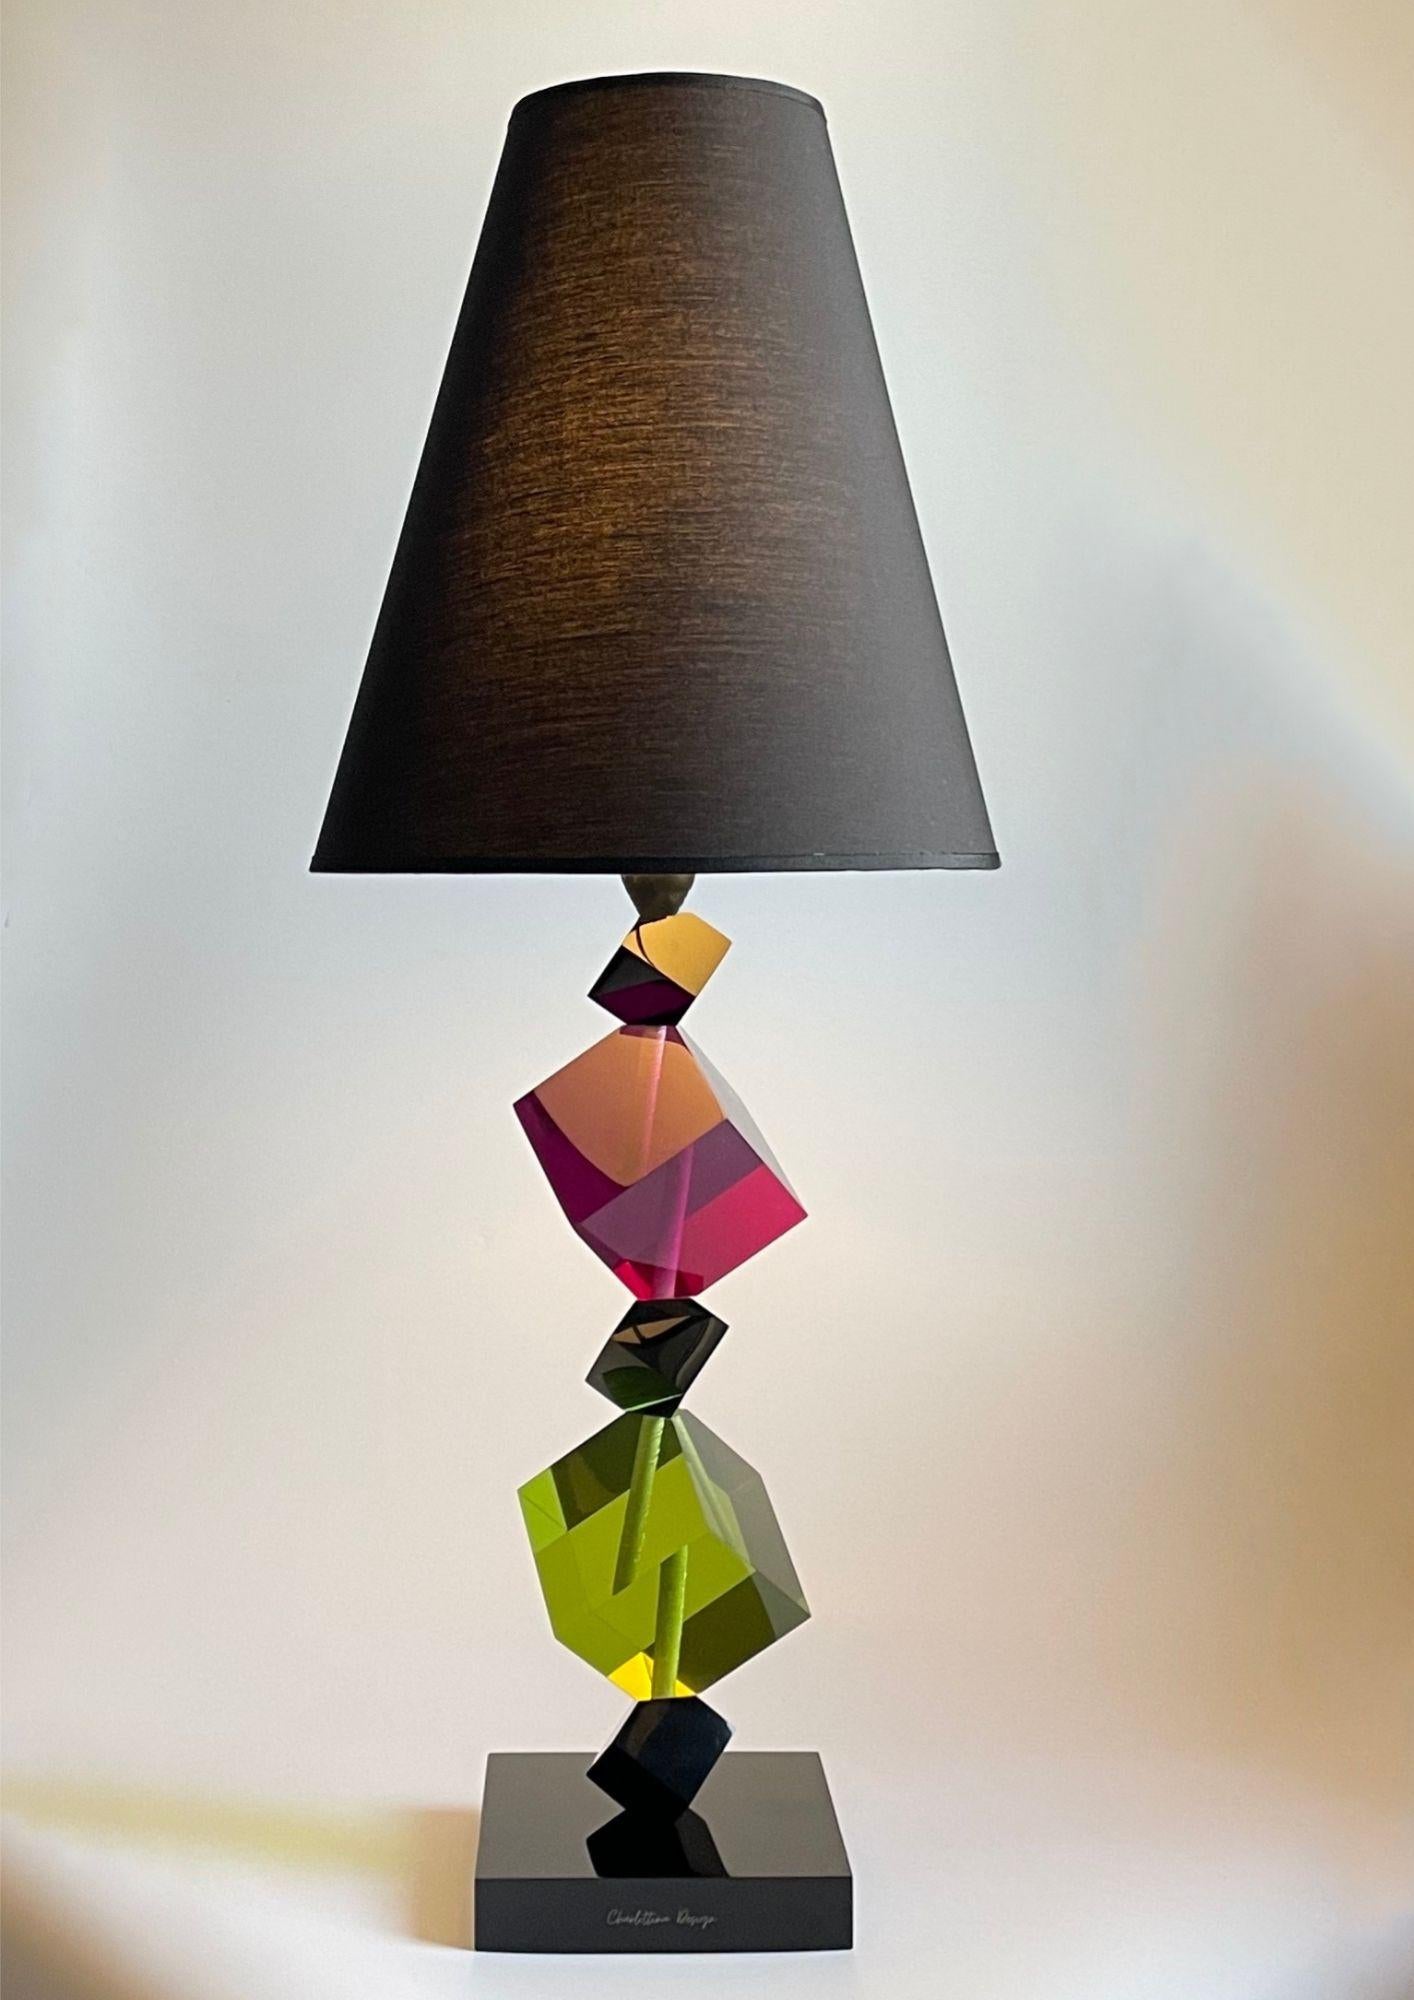 Charlottina Design è una lampada da terra elegante e versatile 100% italiana nel design e nella manifattura. Il modello SAKURA è prevalentemente in resina lavorata artigianalmente che con i suoi giochi di luce offre inedite suggestioni.
La